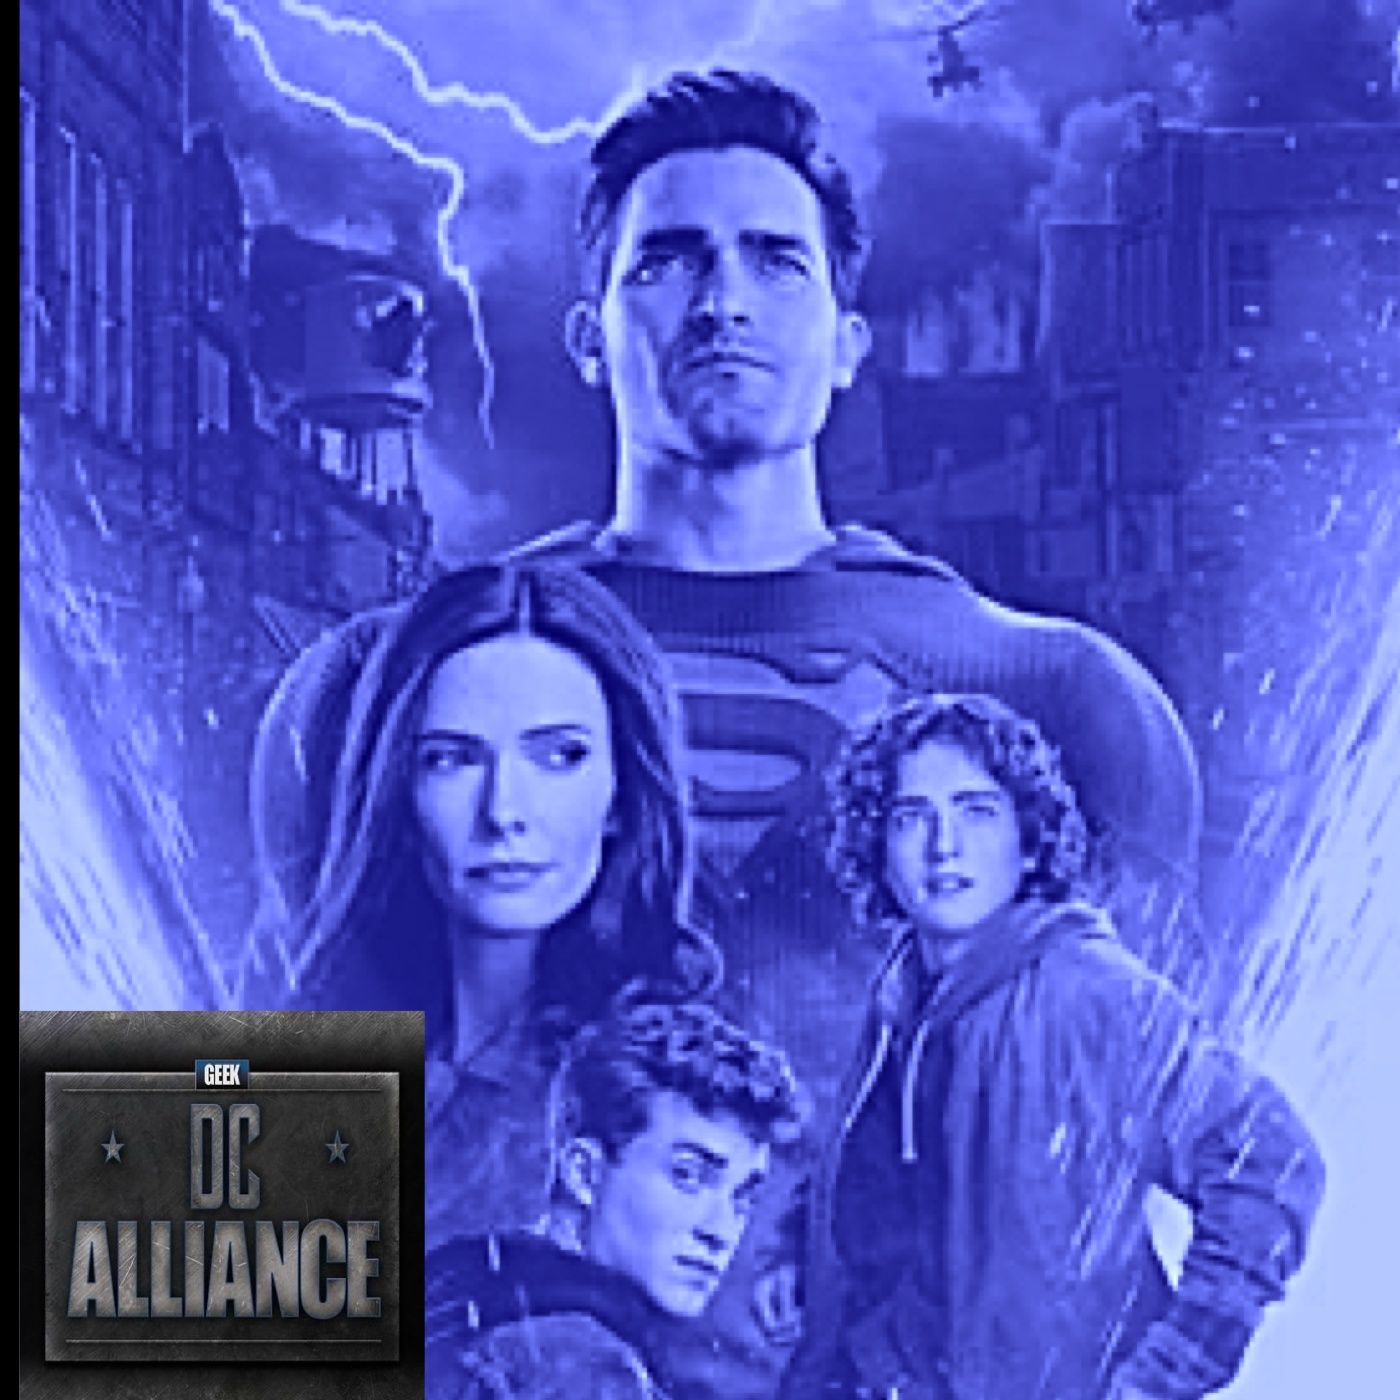 Superman & Lois 2x12 & 13 Review: DC Alliance Ch. 117